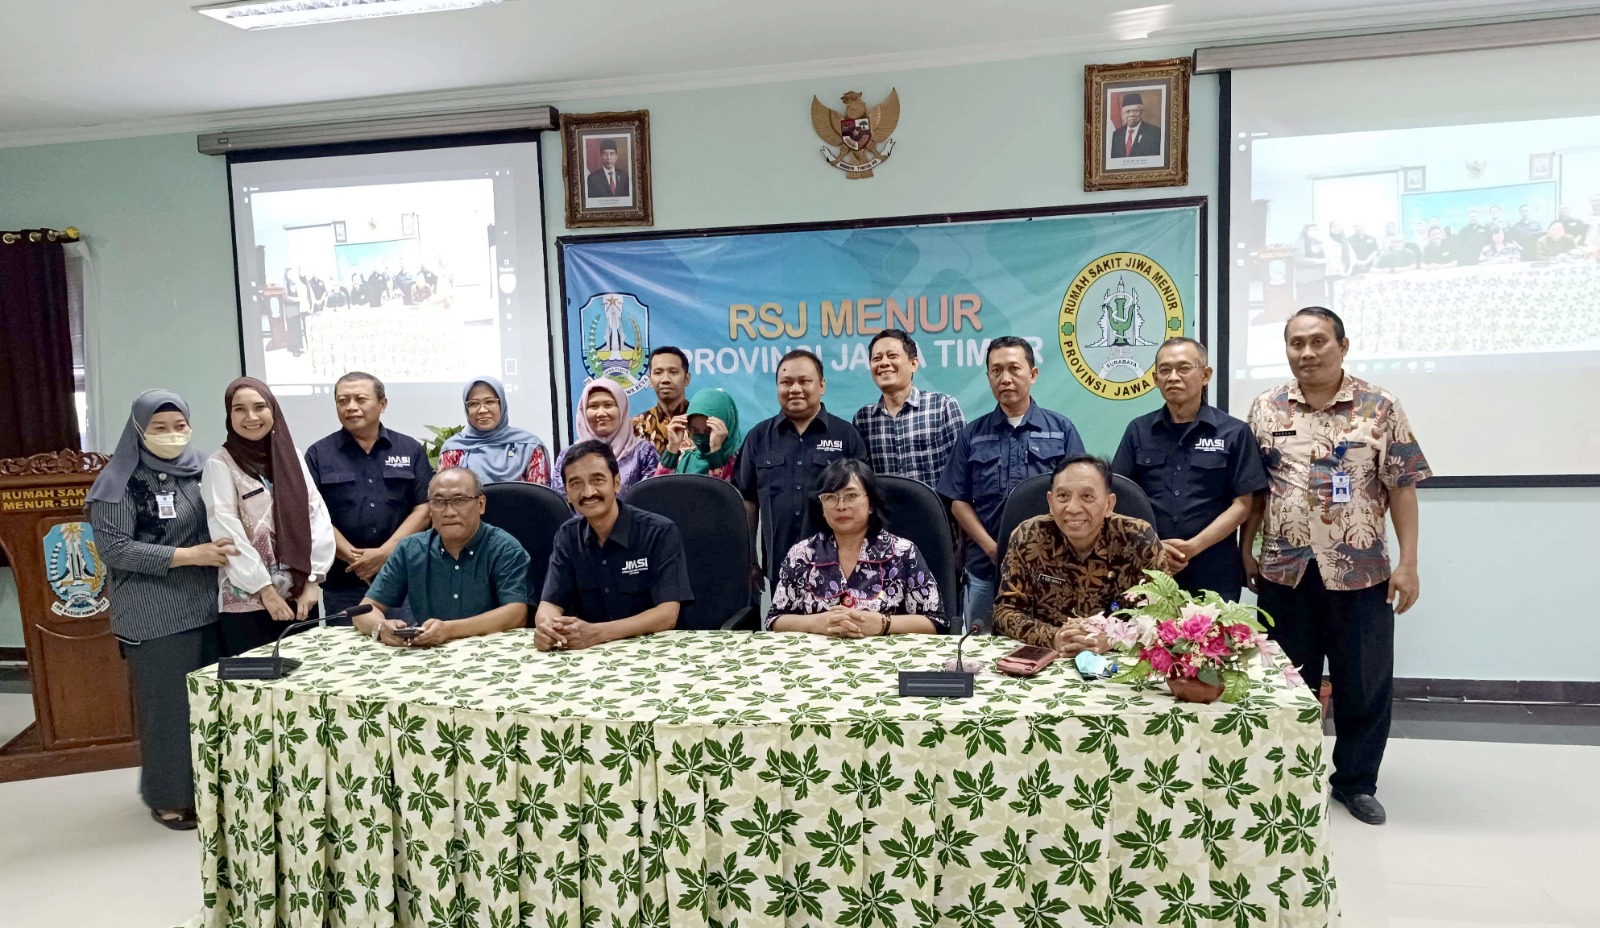 RSJ Menur Surabaya dan JMSI Jatim Jalin Kerjasama Layanan Publik dan Kesehatan